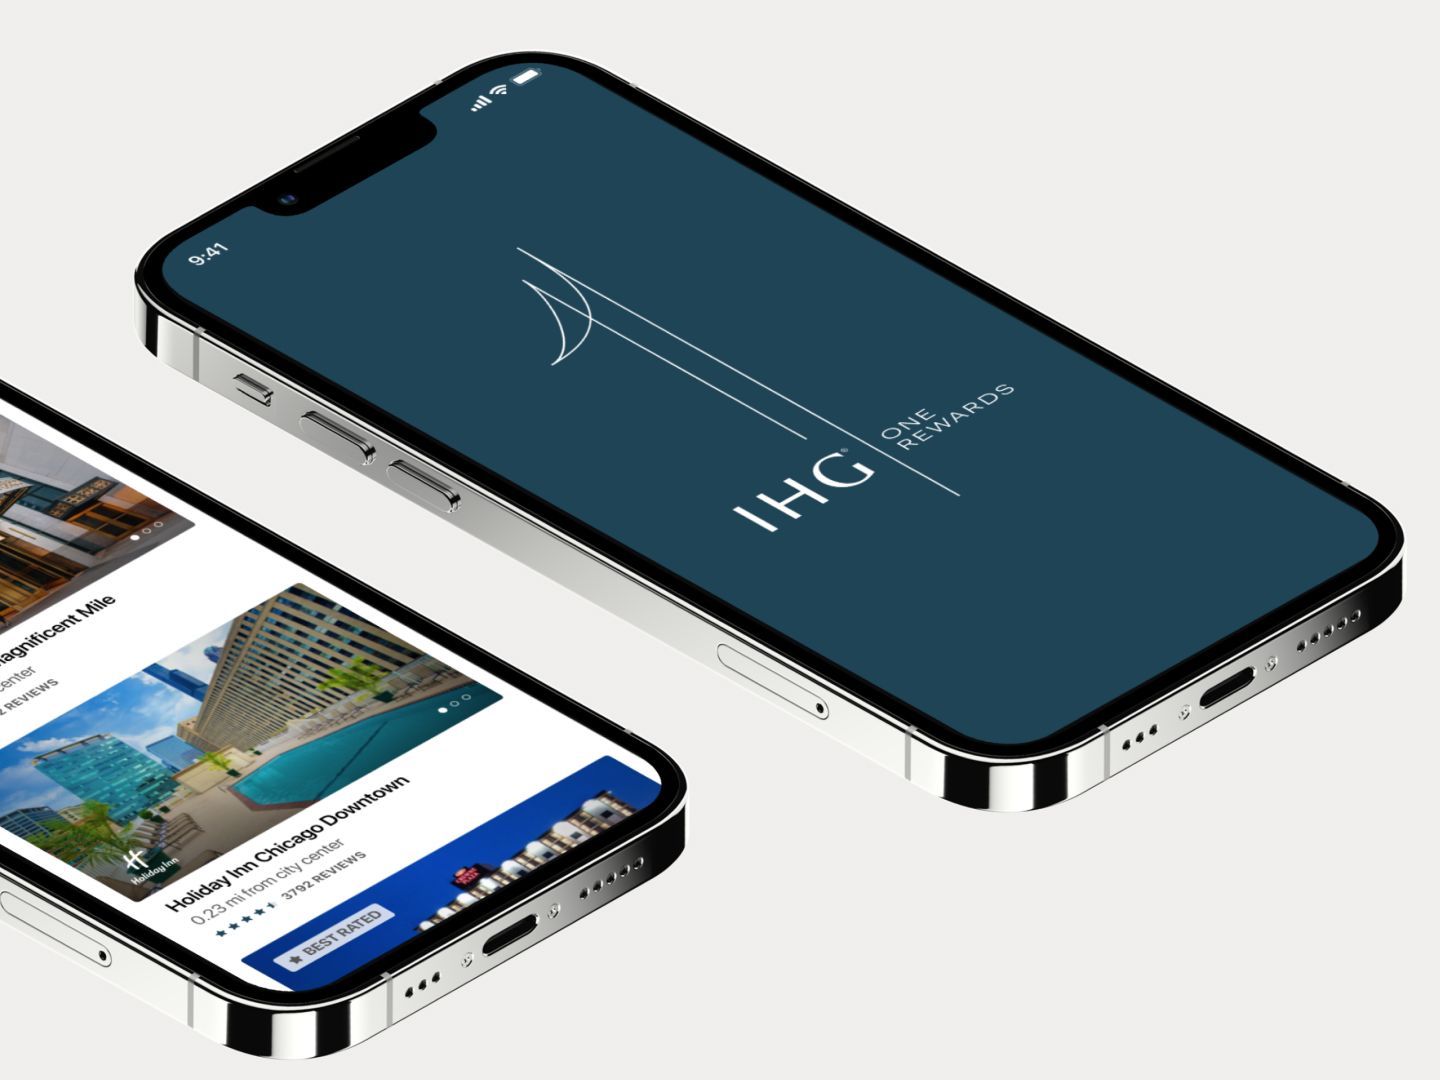 IHG One Rewardsアプリが表示されたスマートフォンの画面